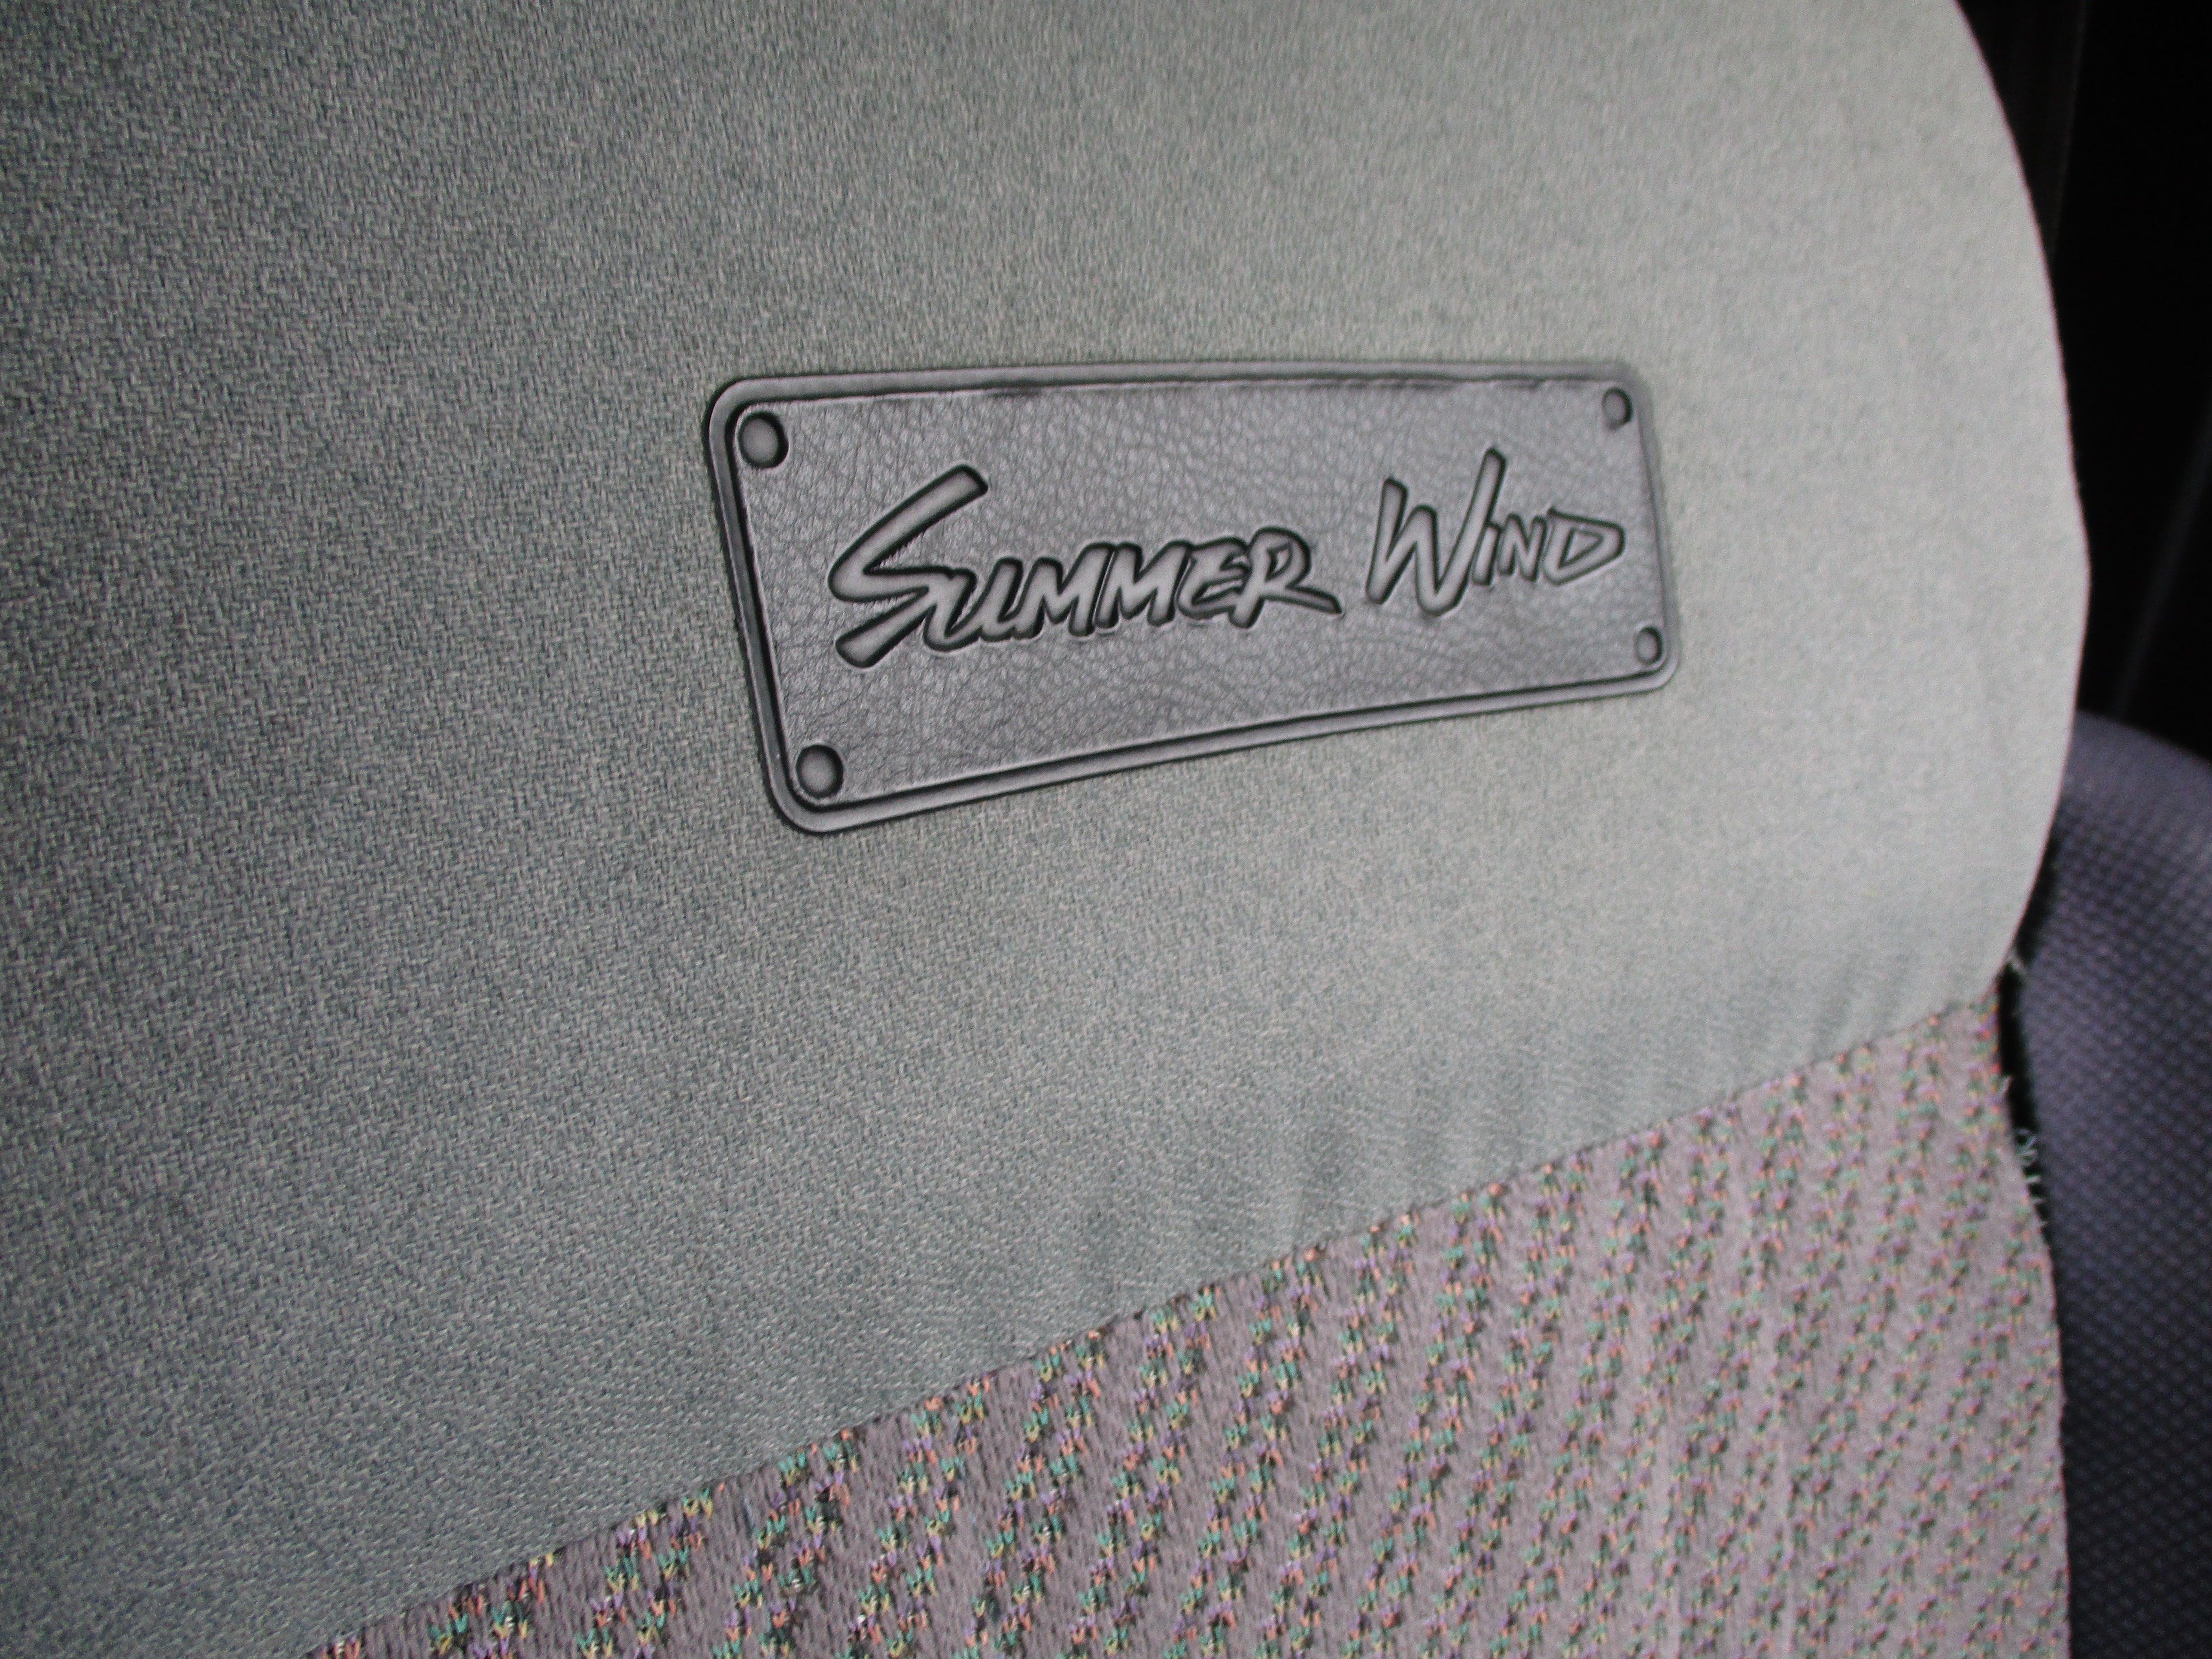 93 JDM Suzuki Jimny Summer Wind Panaromic Roof Turbo 4x4 Manual